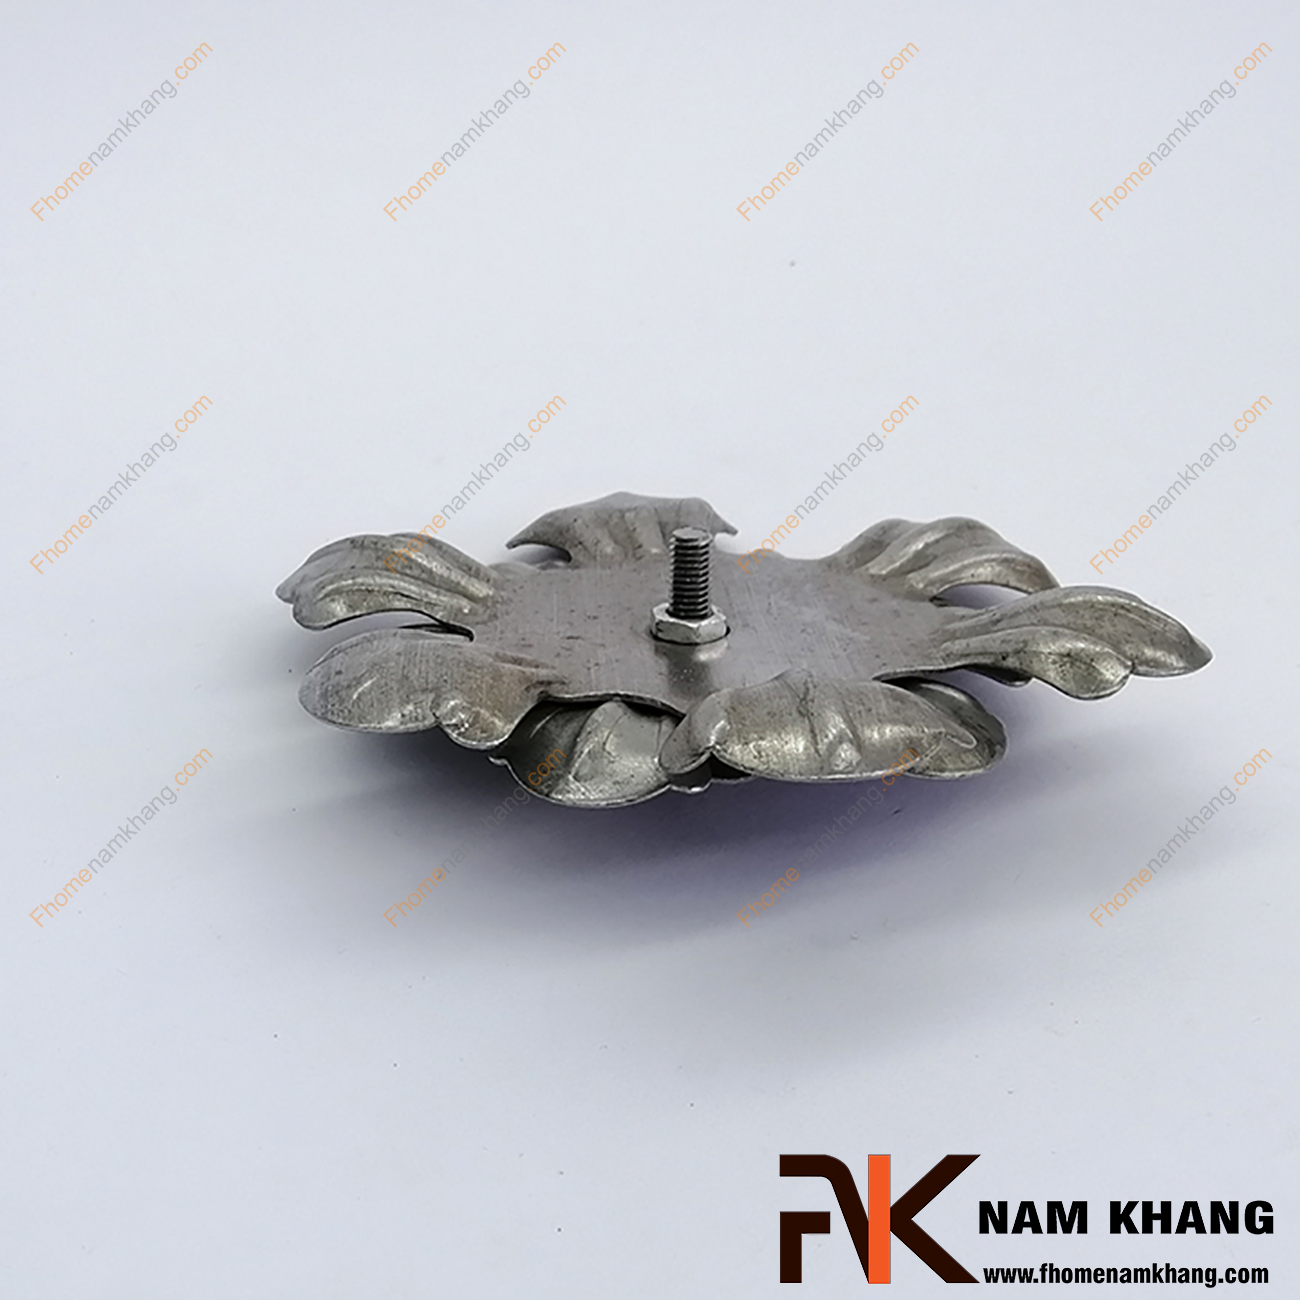 Hoa thép dập kép NKS-24 được sản xuất từ thép tấm có độ dày 1-2mm, có bề mặt láng mịn, hàn gắn dể dàng vào các chi tiết thép khác.